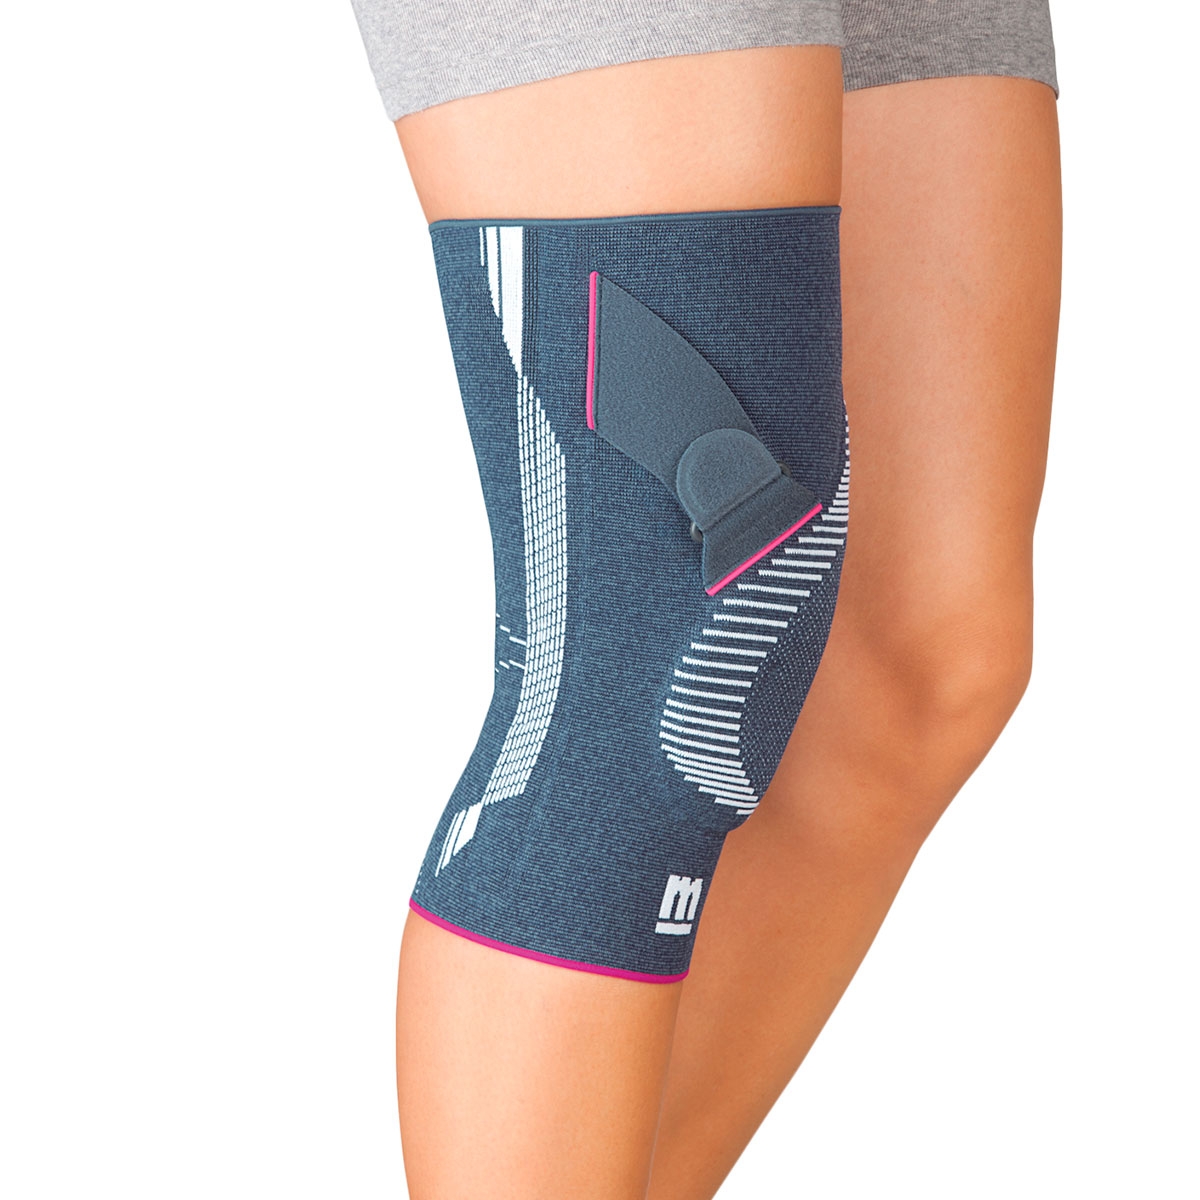 Genumedi PT Kniebandage von medi- für eine Patella im Gleichgewicht- sichere Führung der Kniescheibe unter Kniebandagen